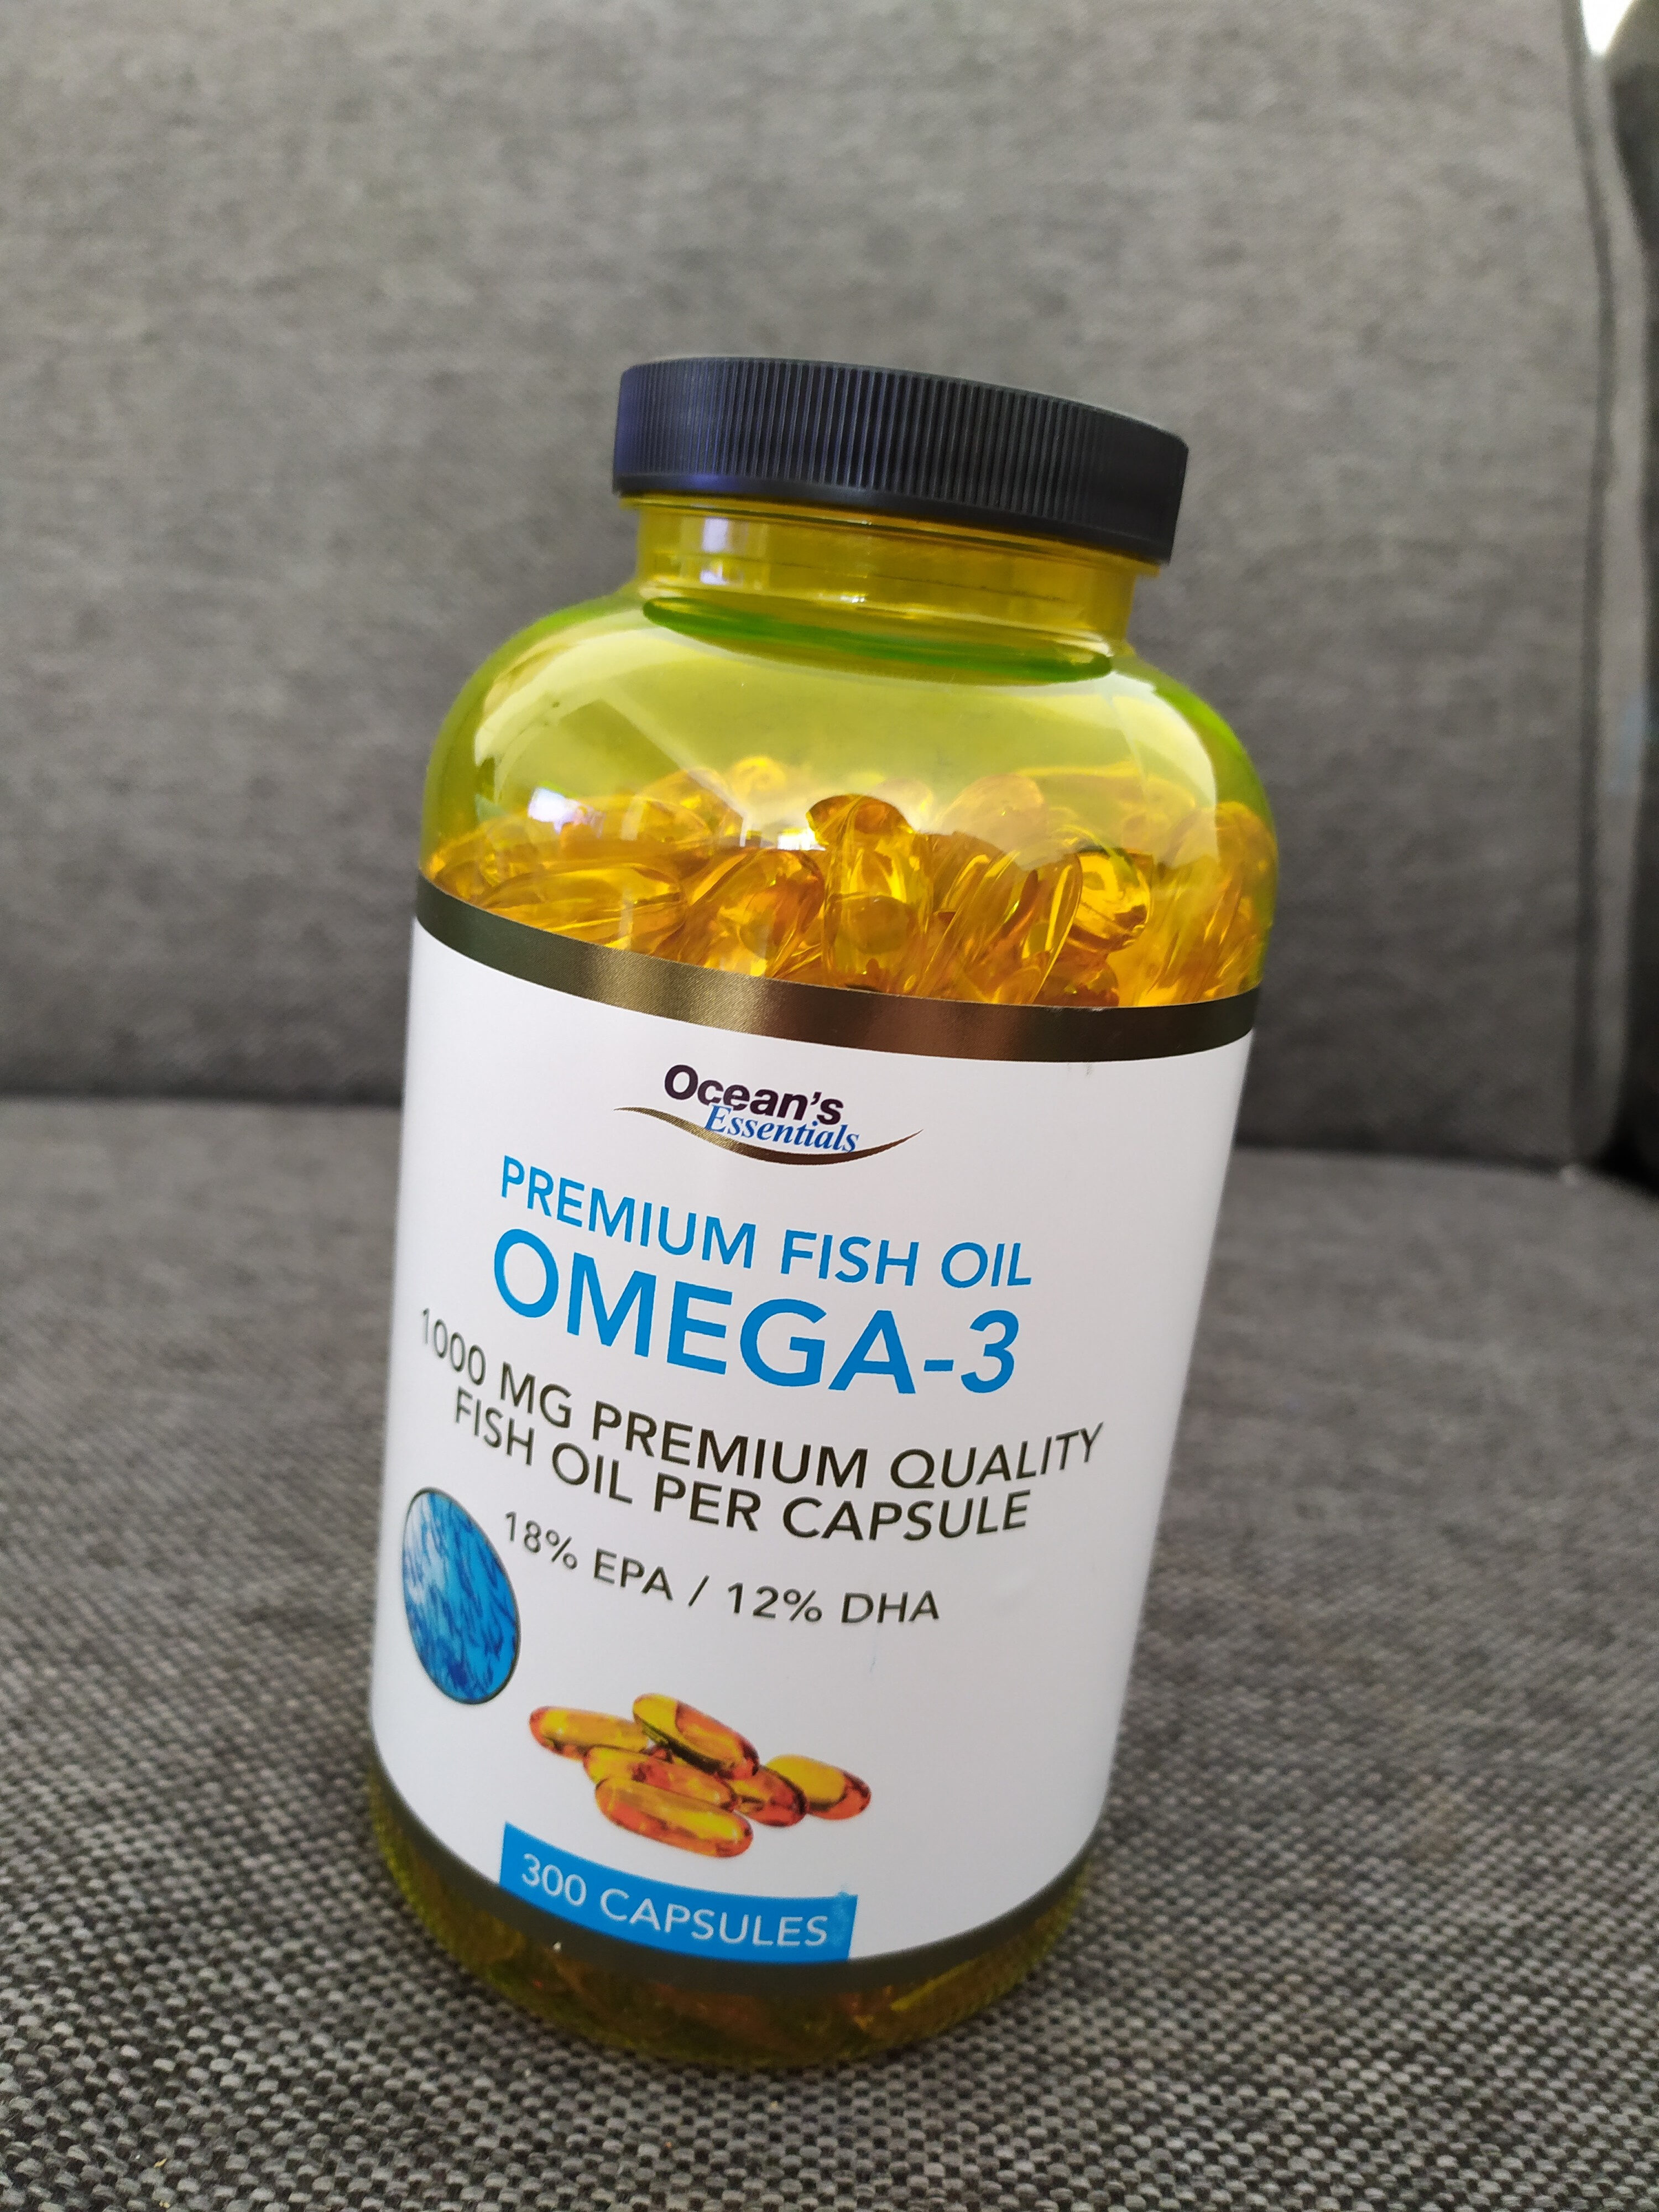 Premium fish oil - Omega-3 - Ocean's Essentials